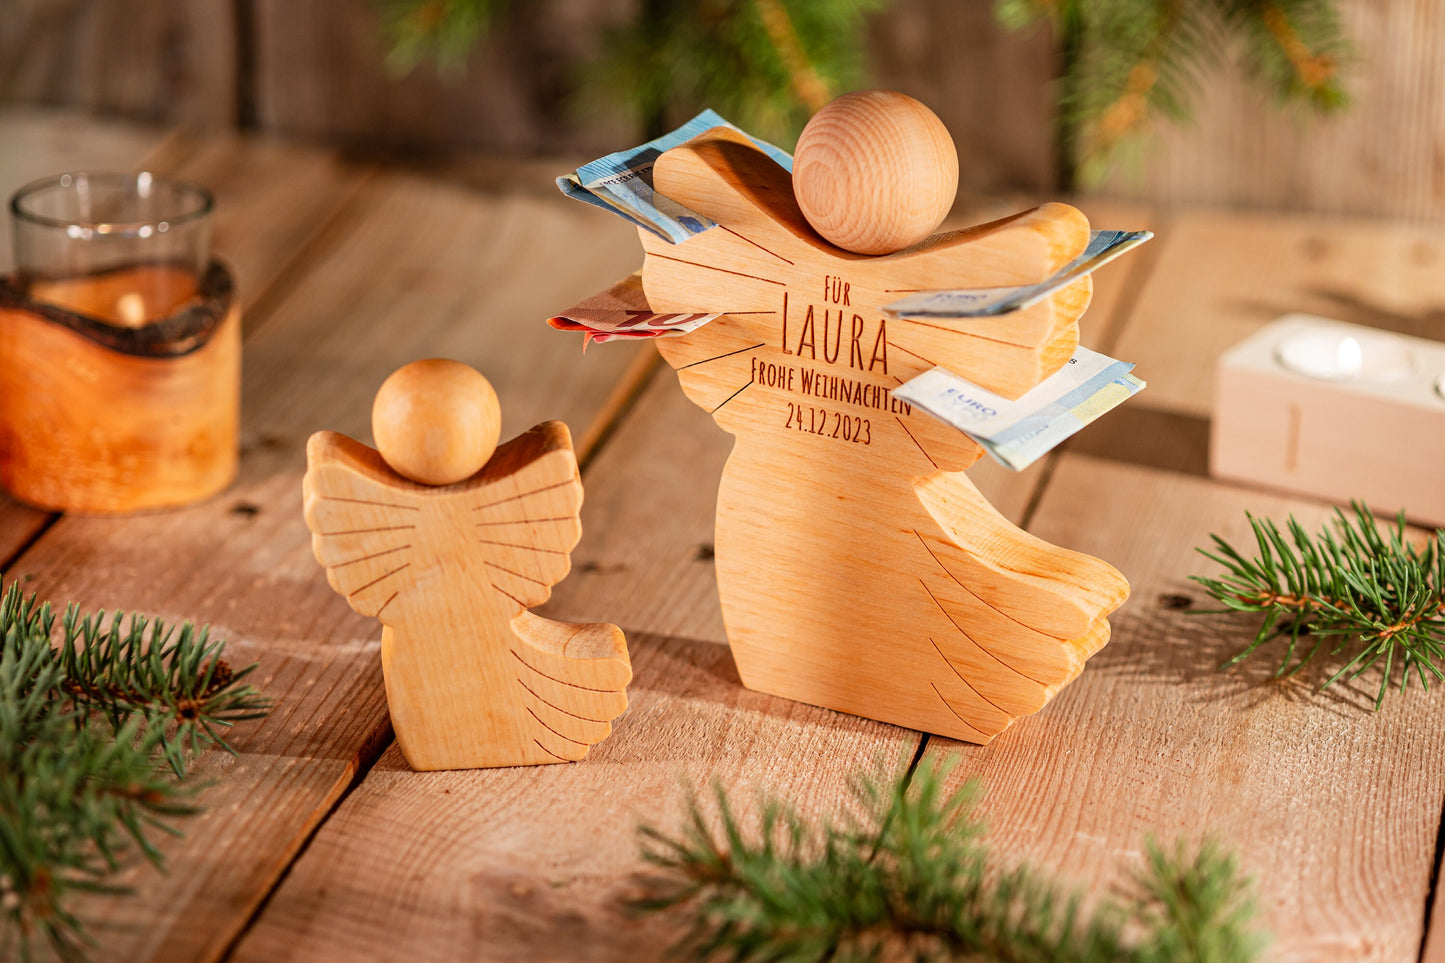 Weihnachtsengel aus Holz, Geldgeschenk zu Weihnachten, Weihnachtsgeschenk Enkel und Kinder, Engel aus Holz, Schutzengel, Engel aus Holz